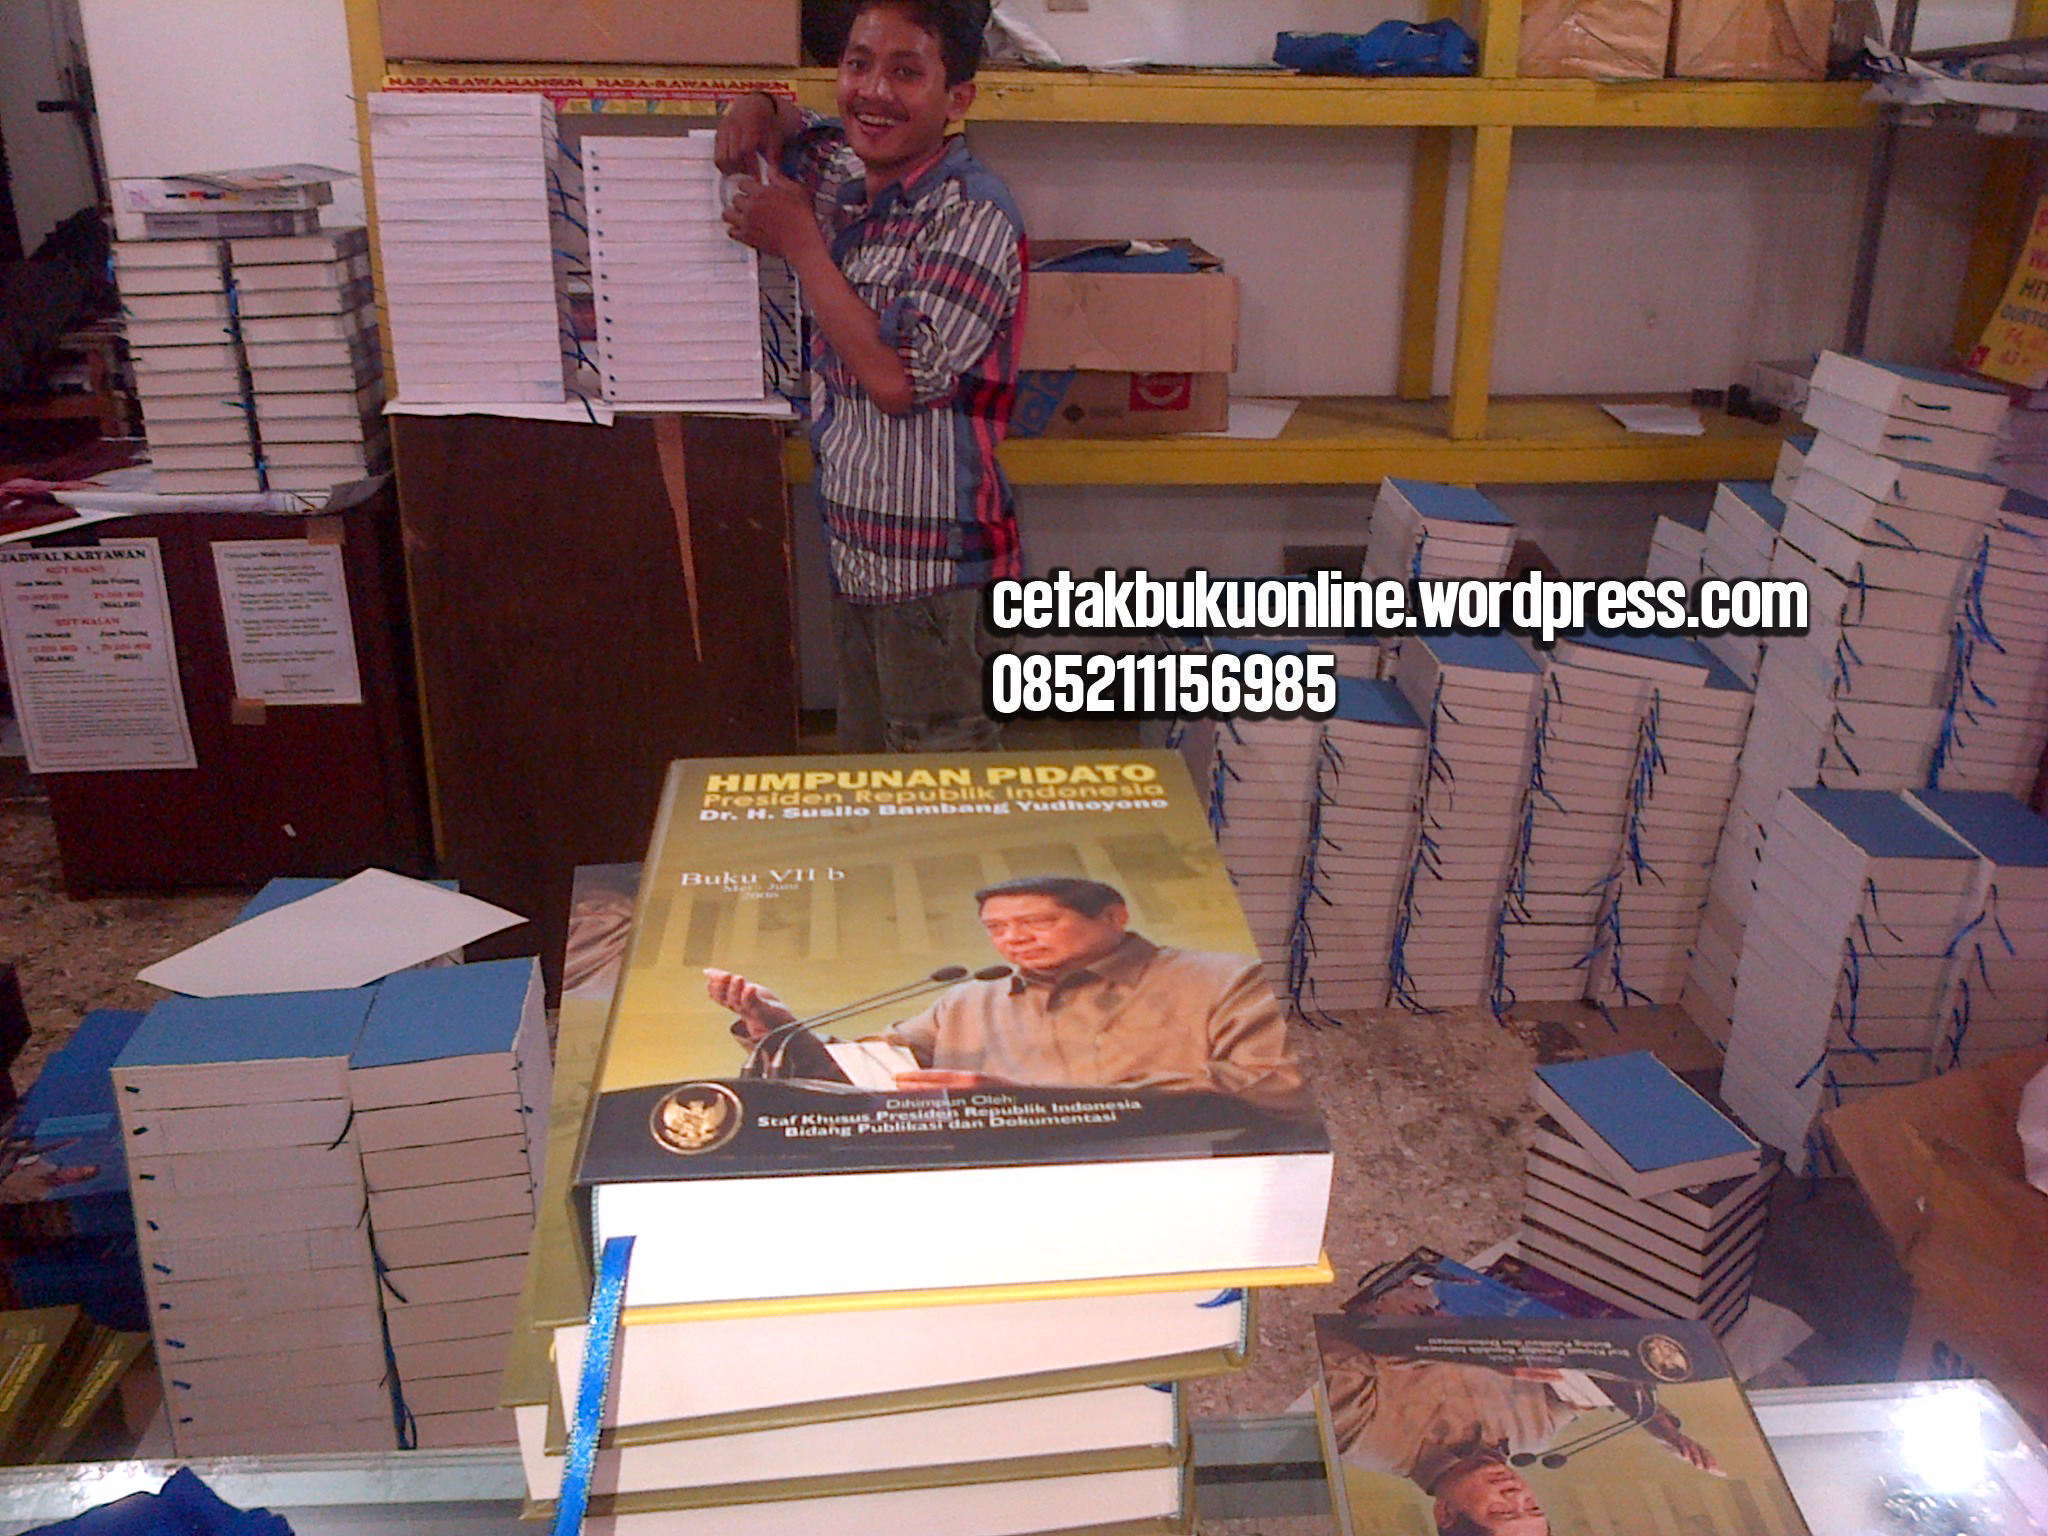 CETAK BUKU Tempat Percetakan Buku Di Jakarta